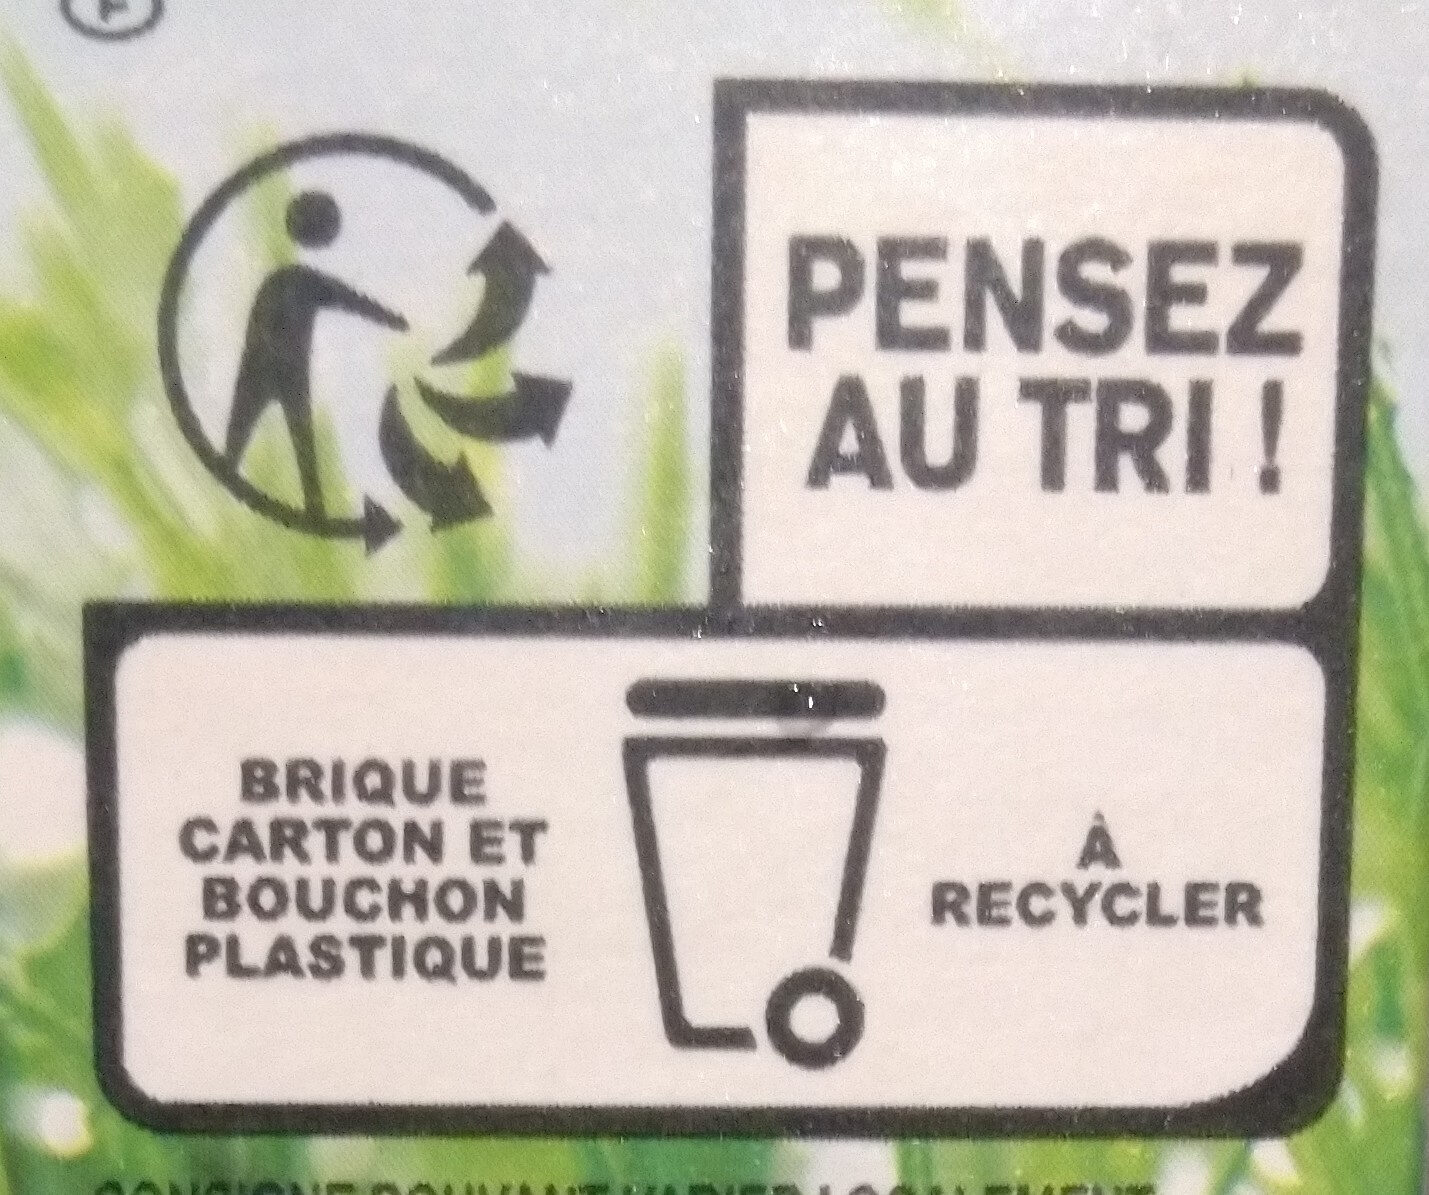 Lait demi-ecrémé - Instruction de recyclage et/ou informations d'emballage